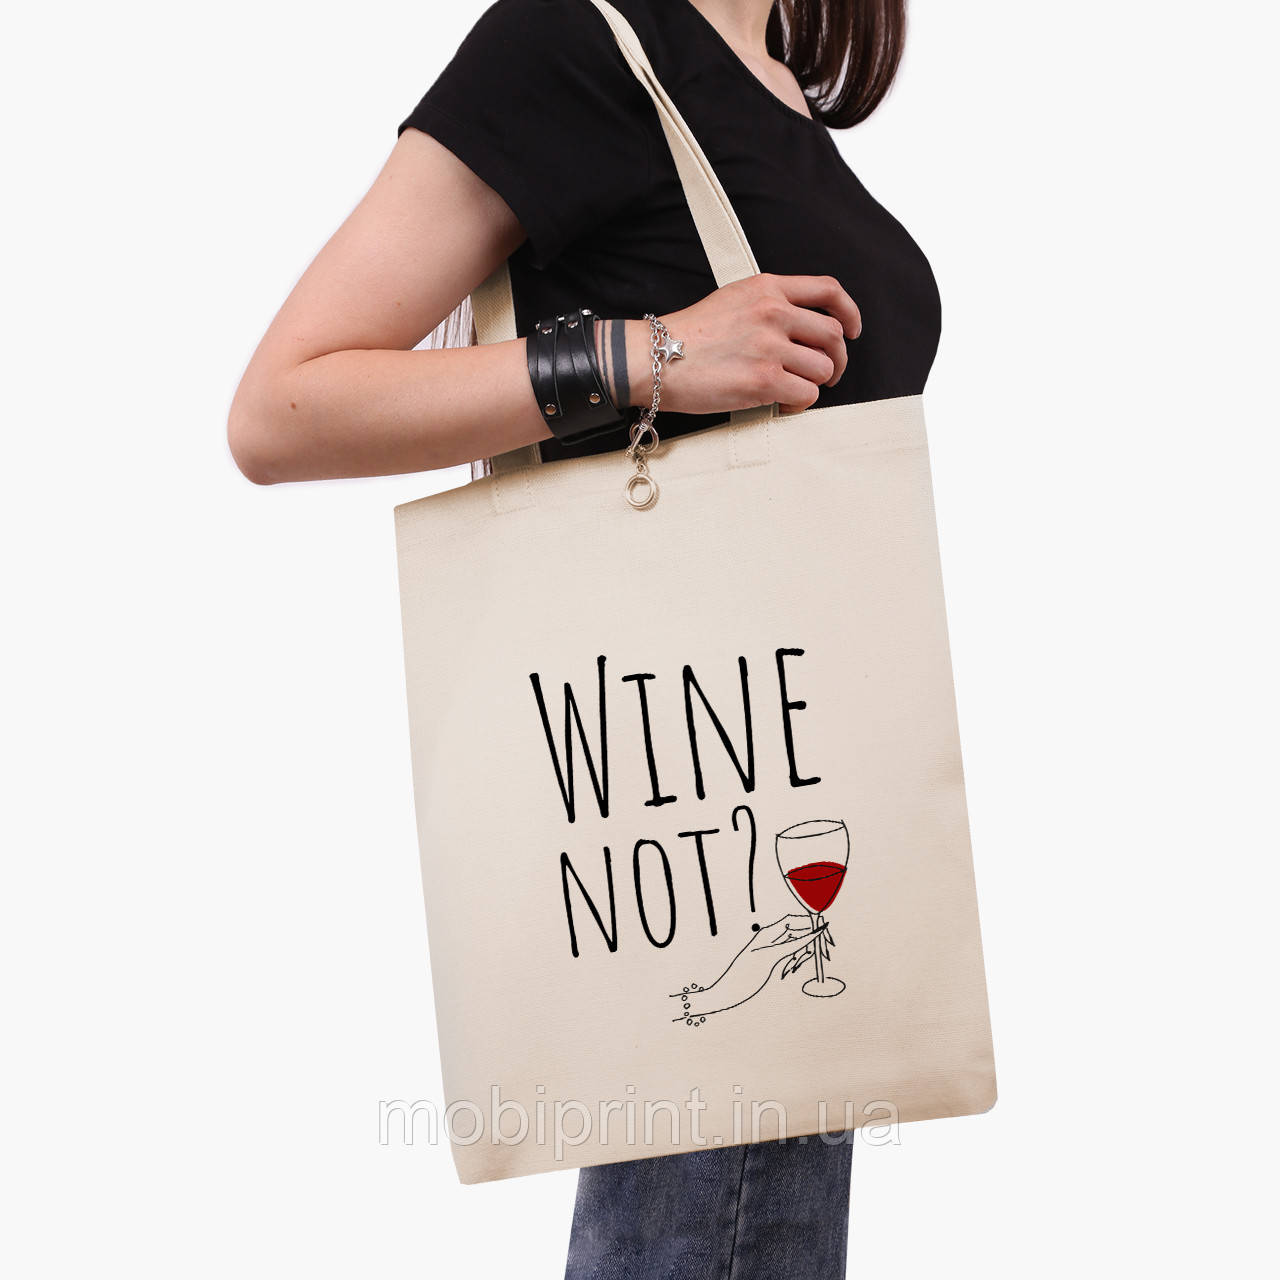 Еко сумка Вино (Wine not?) (9227-2615-BG) бежева класік саржа, фото 1